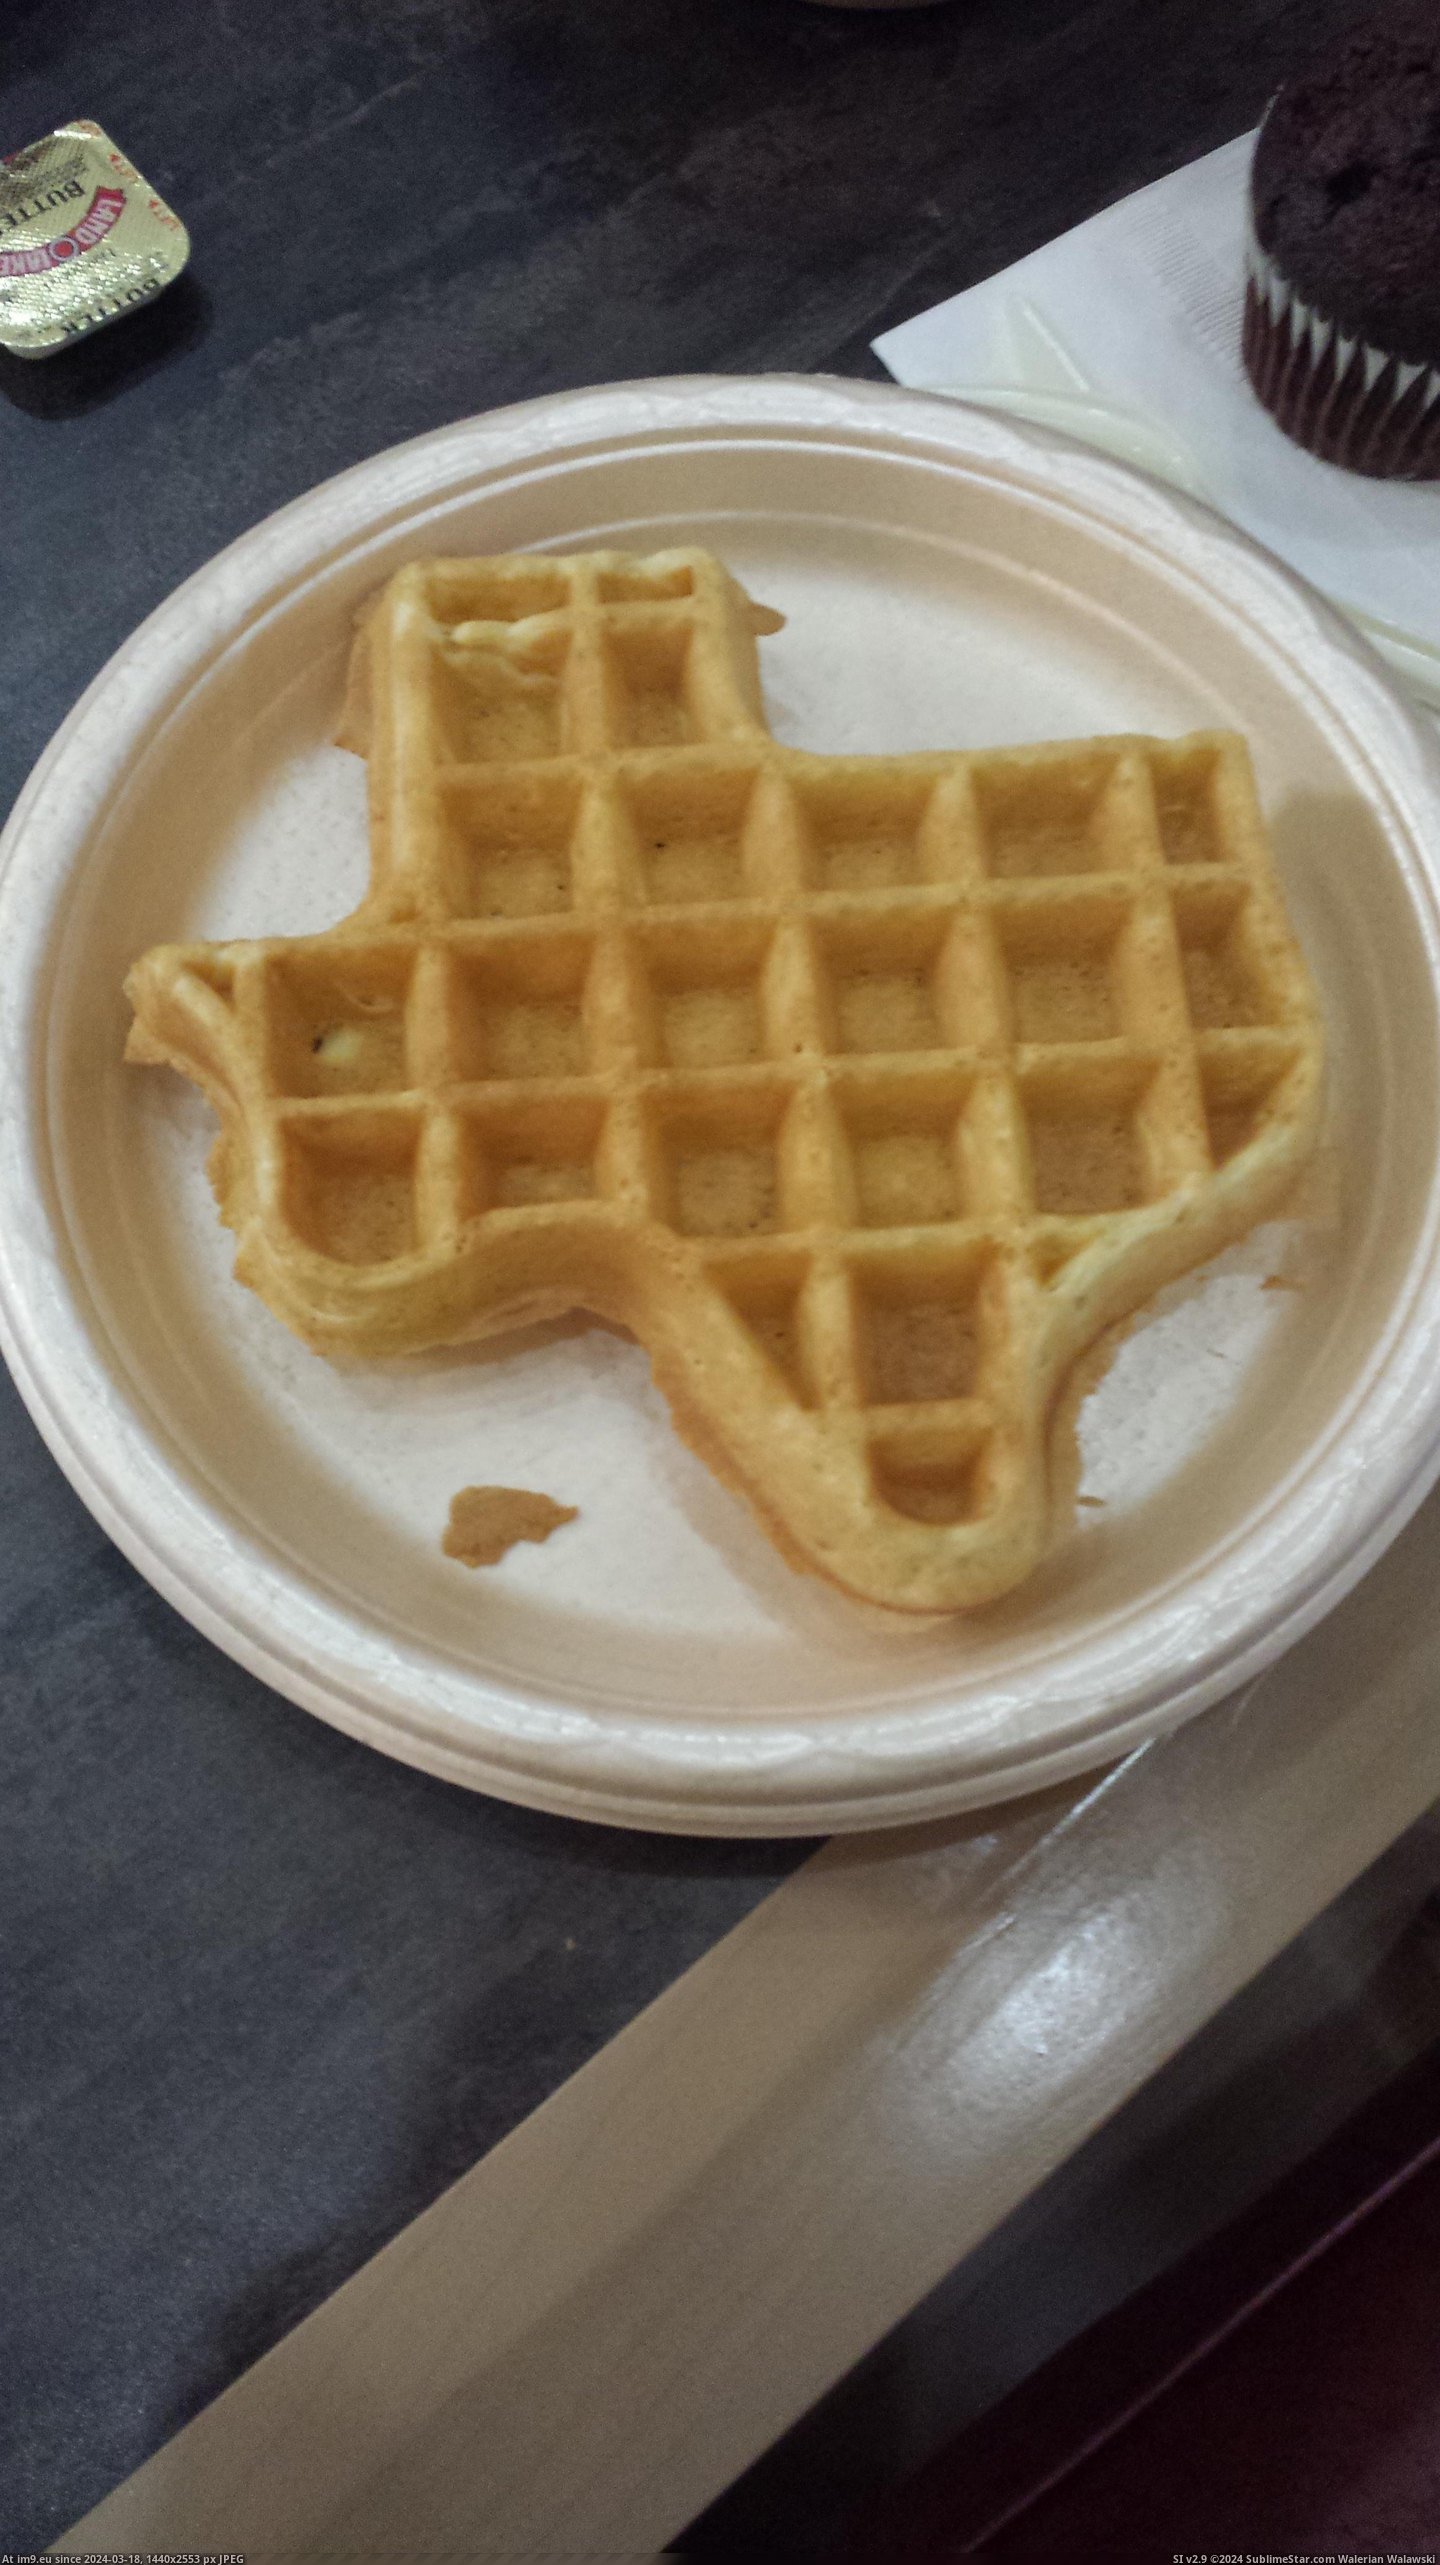 #Hotel #Texas #Staying #Kansas #Serves #Shaped #Waffles [Mildlyinteresting] The hotel I'm staying at in Kansas serves waffles shaped like Texas Pic. (Obraz z album My r/MILDLYINTERESTING favs))